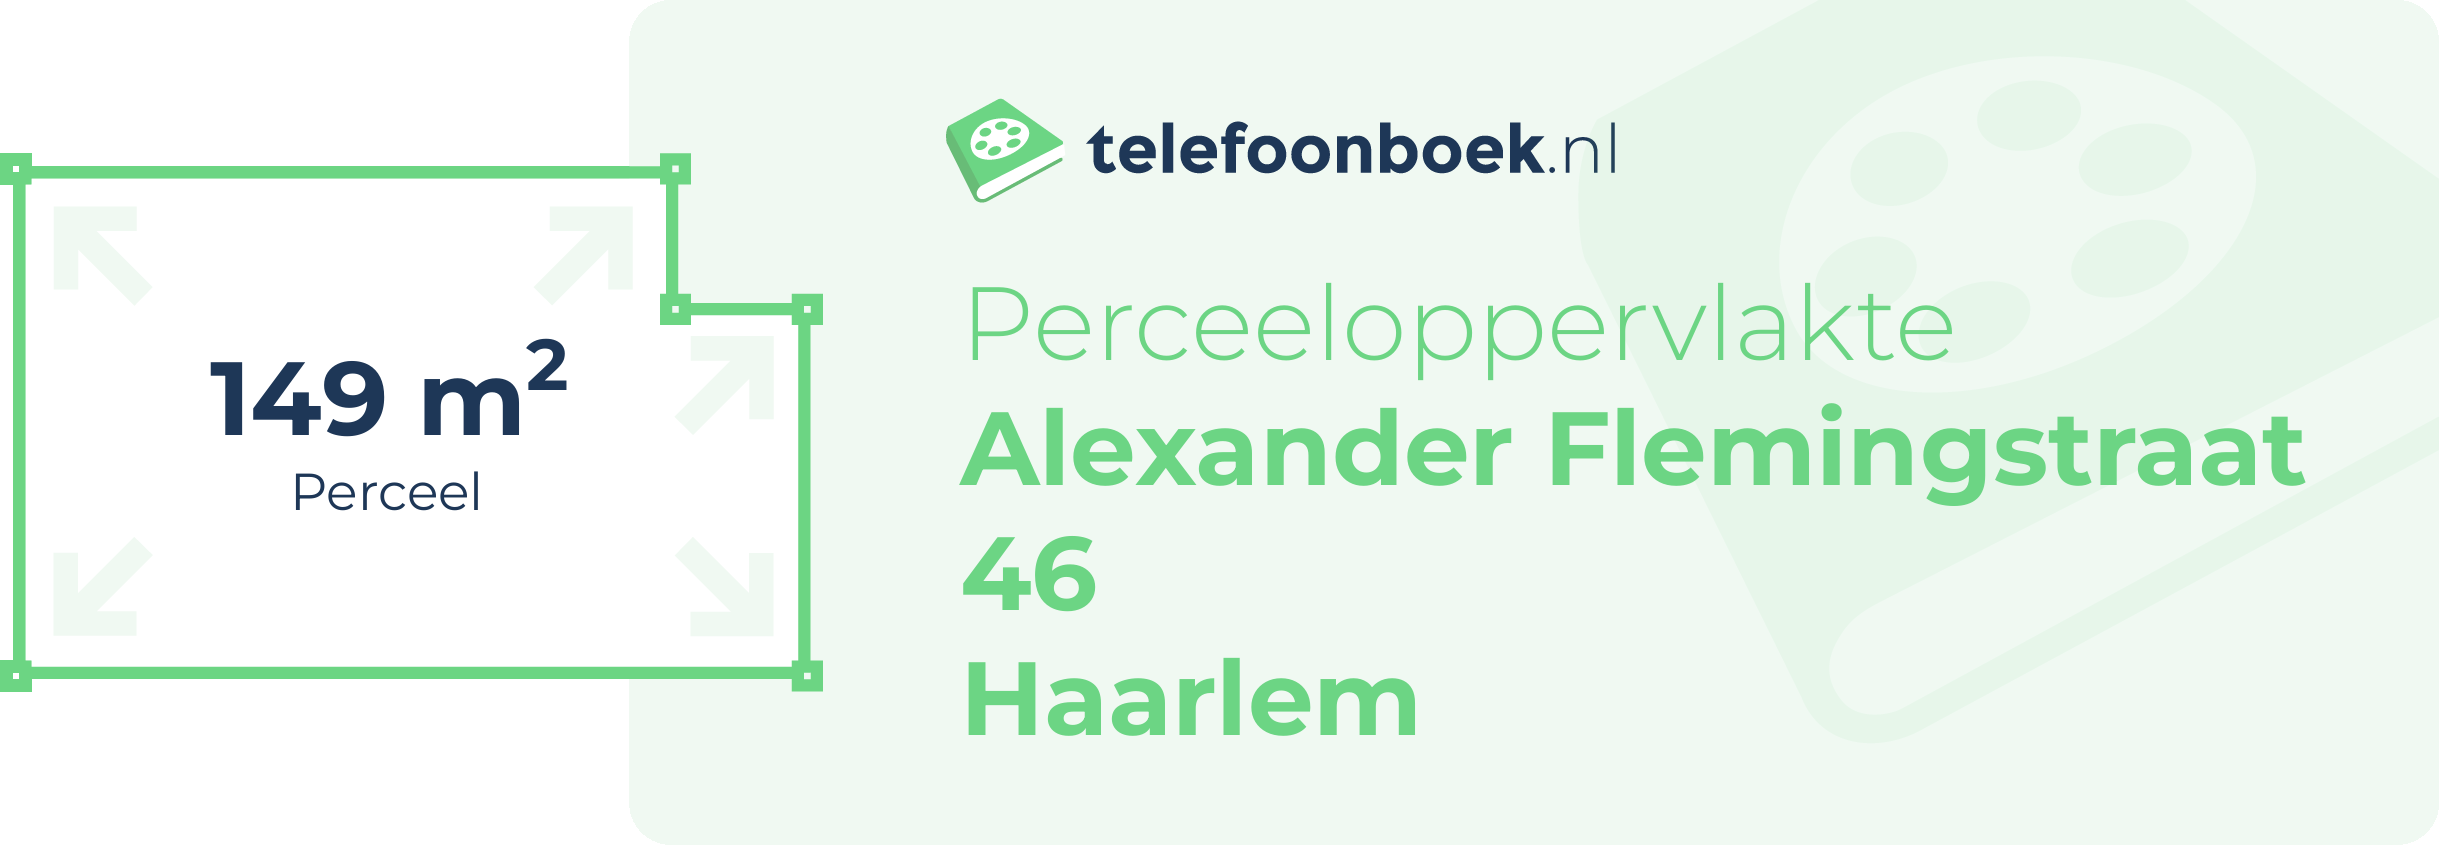 Perceeloppervlakte Alexander Flemingstraat 46 Haarlem